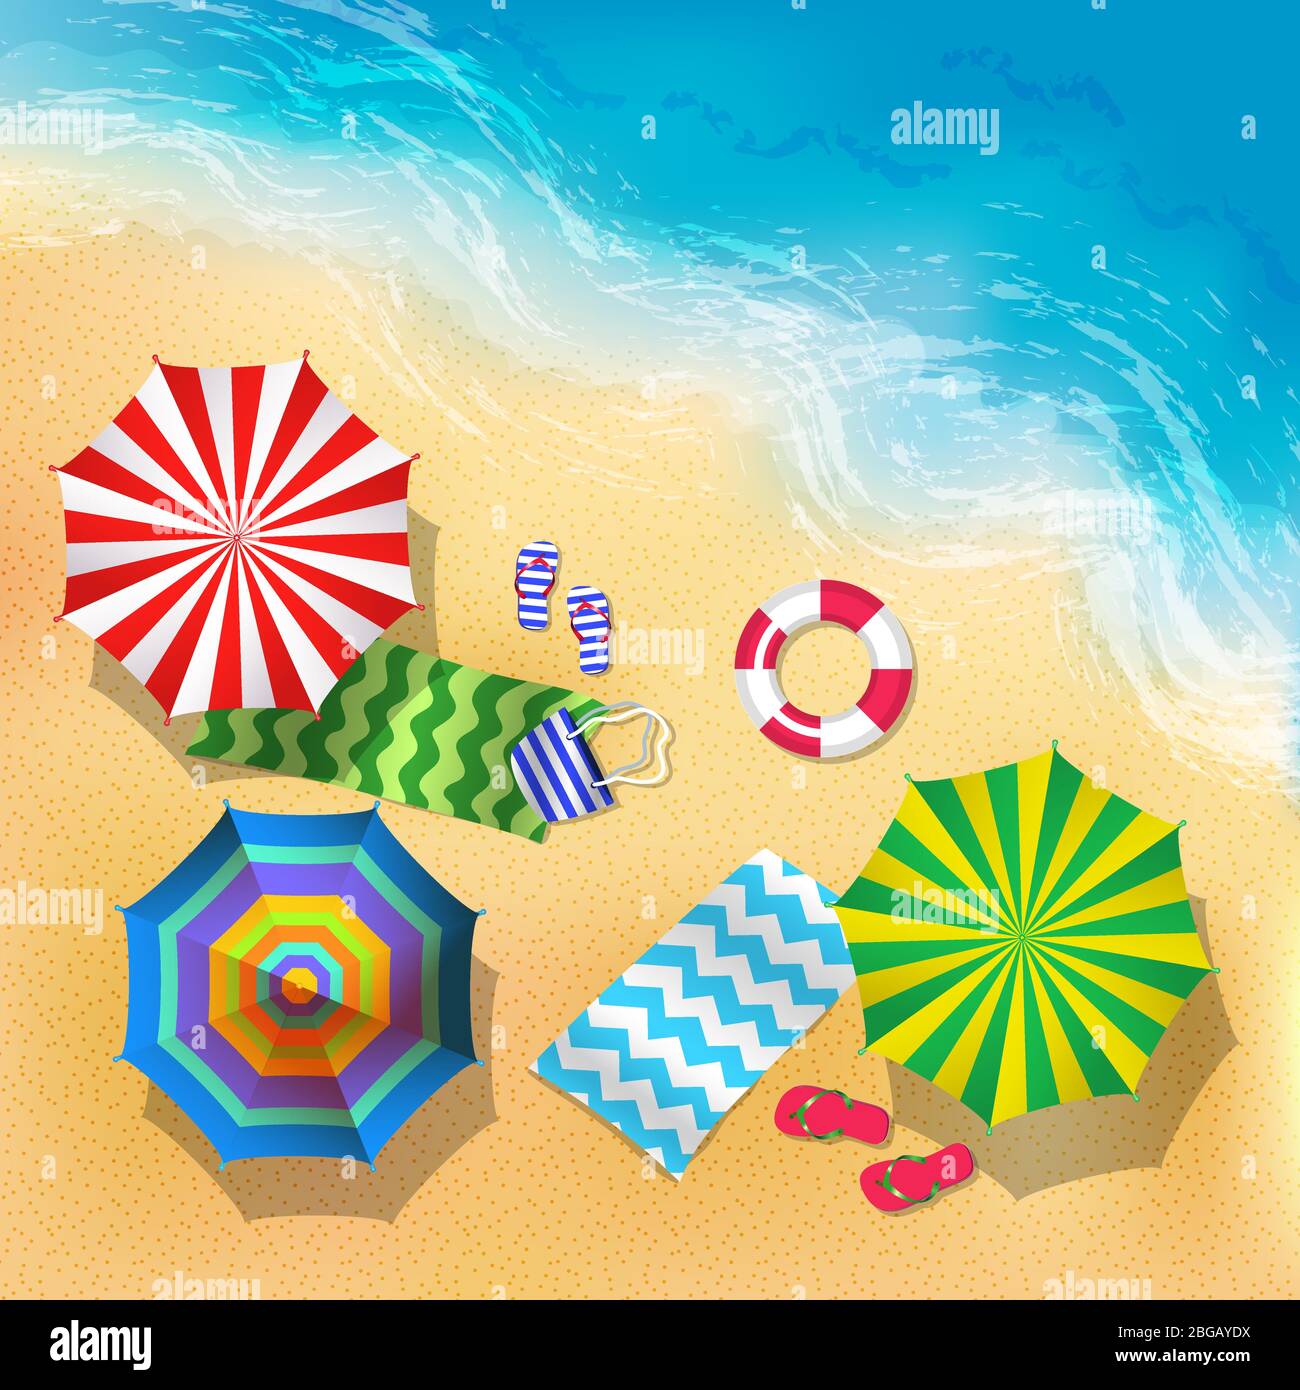 Draufsicht Vektor-Illustration von Strand, Sand und Sonnenschirm. Sommer Hintergrund Stock Vektor